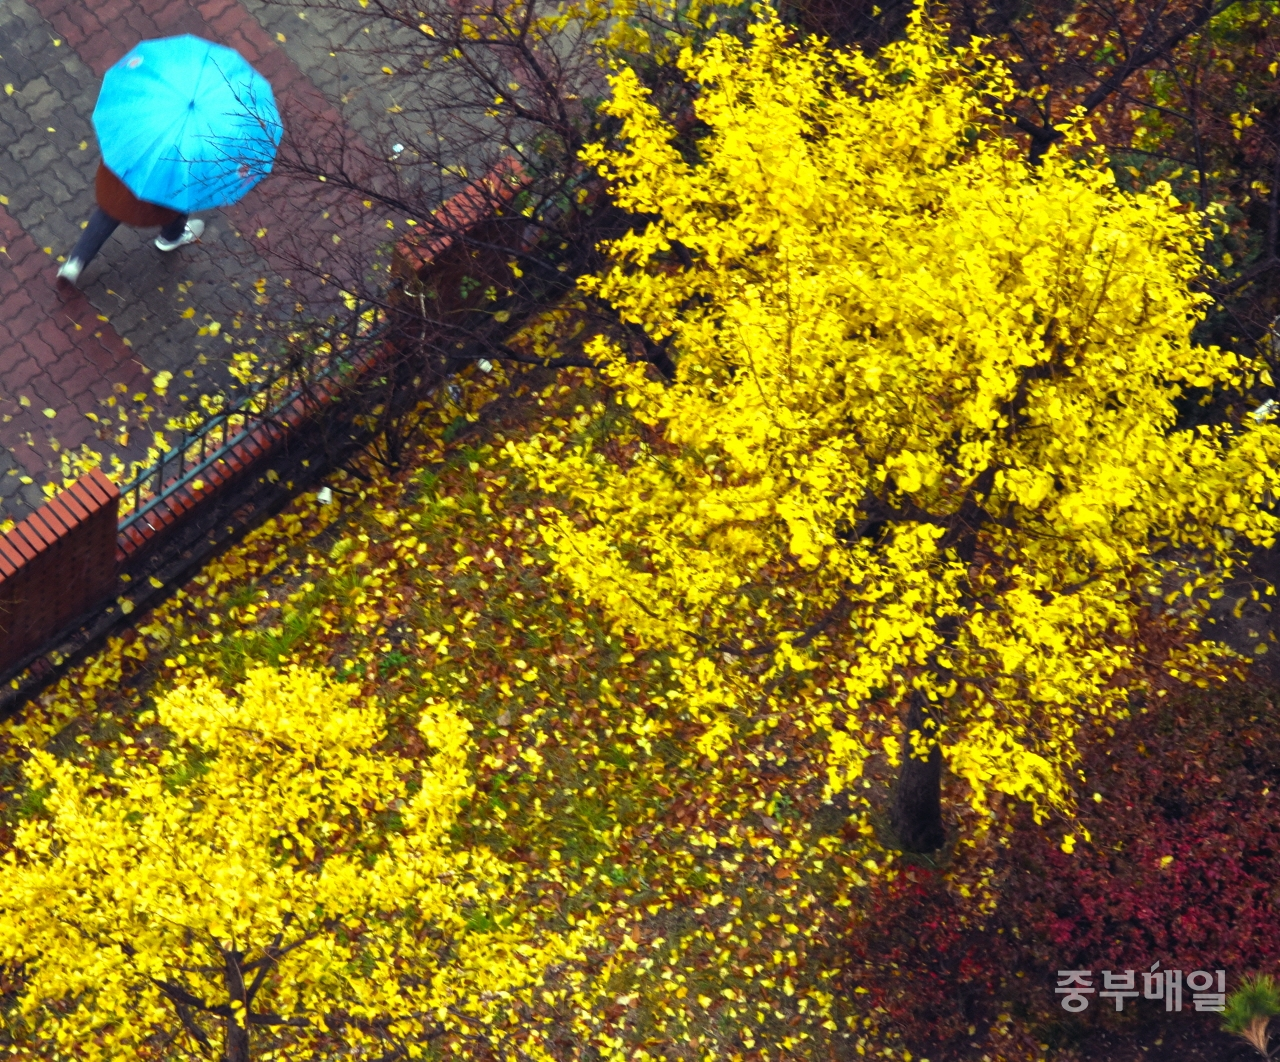 낙엽 비 내리는 거리일요일인 17일 겨울을 재촉하는 비가 내리며 거리에 낙엽 비를 내린 가운데 기상청에 따르면 이 비가 그치면 추위가 찾아올 것으로 예보하고 있다. / 김용수